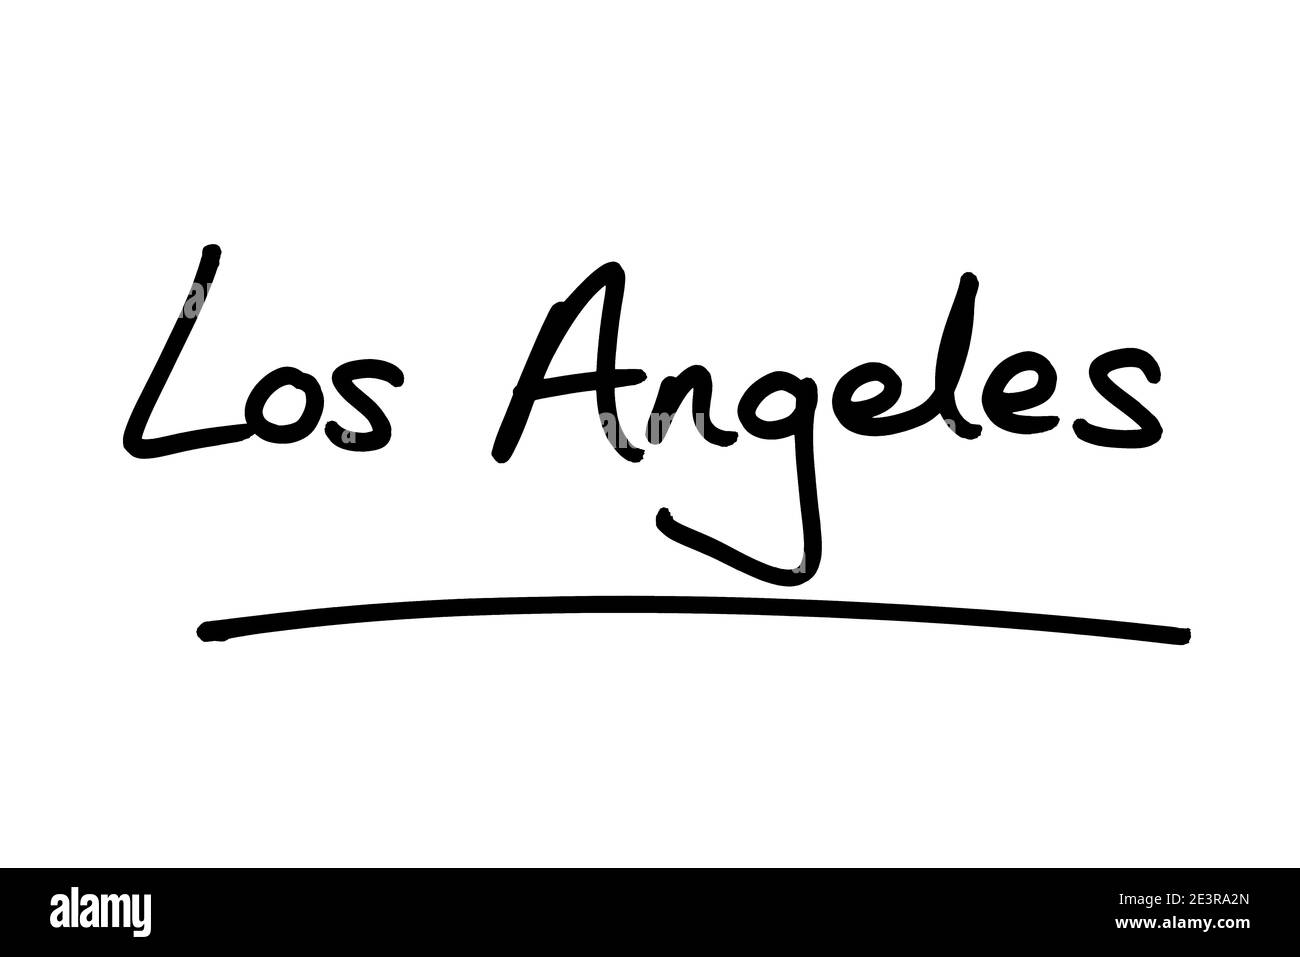 Los Angeles - una città dello stato della California, negli Stati Uniti d'America. Foto Stock